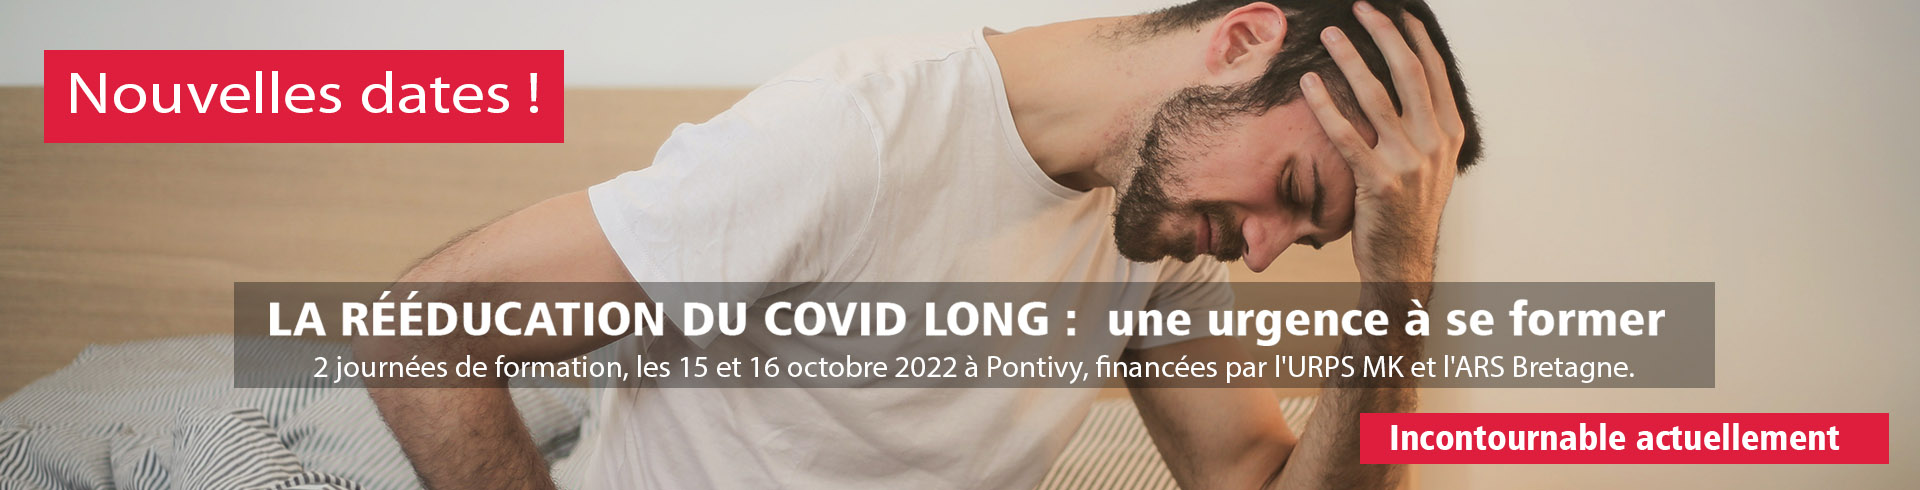 LA RÉÉDUCATION DU COVID LONG : une urgence à se former – La formation aura lieu les 15 et 16 octobre 2022 à Pontivy (entièrement prise en charge).